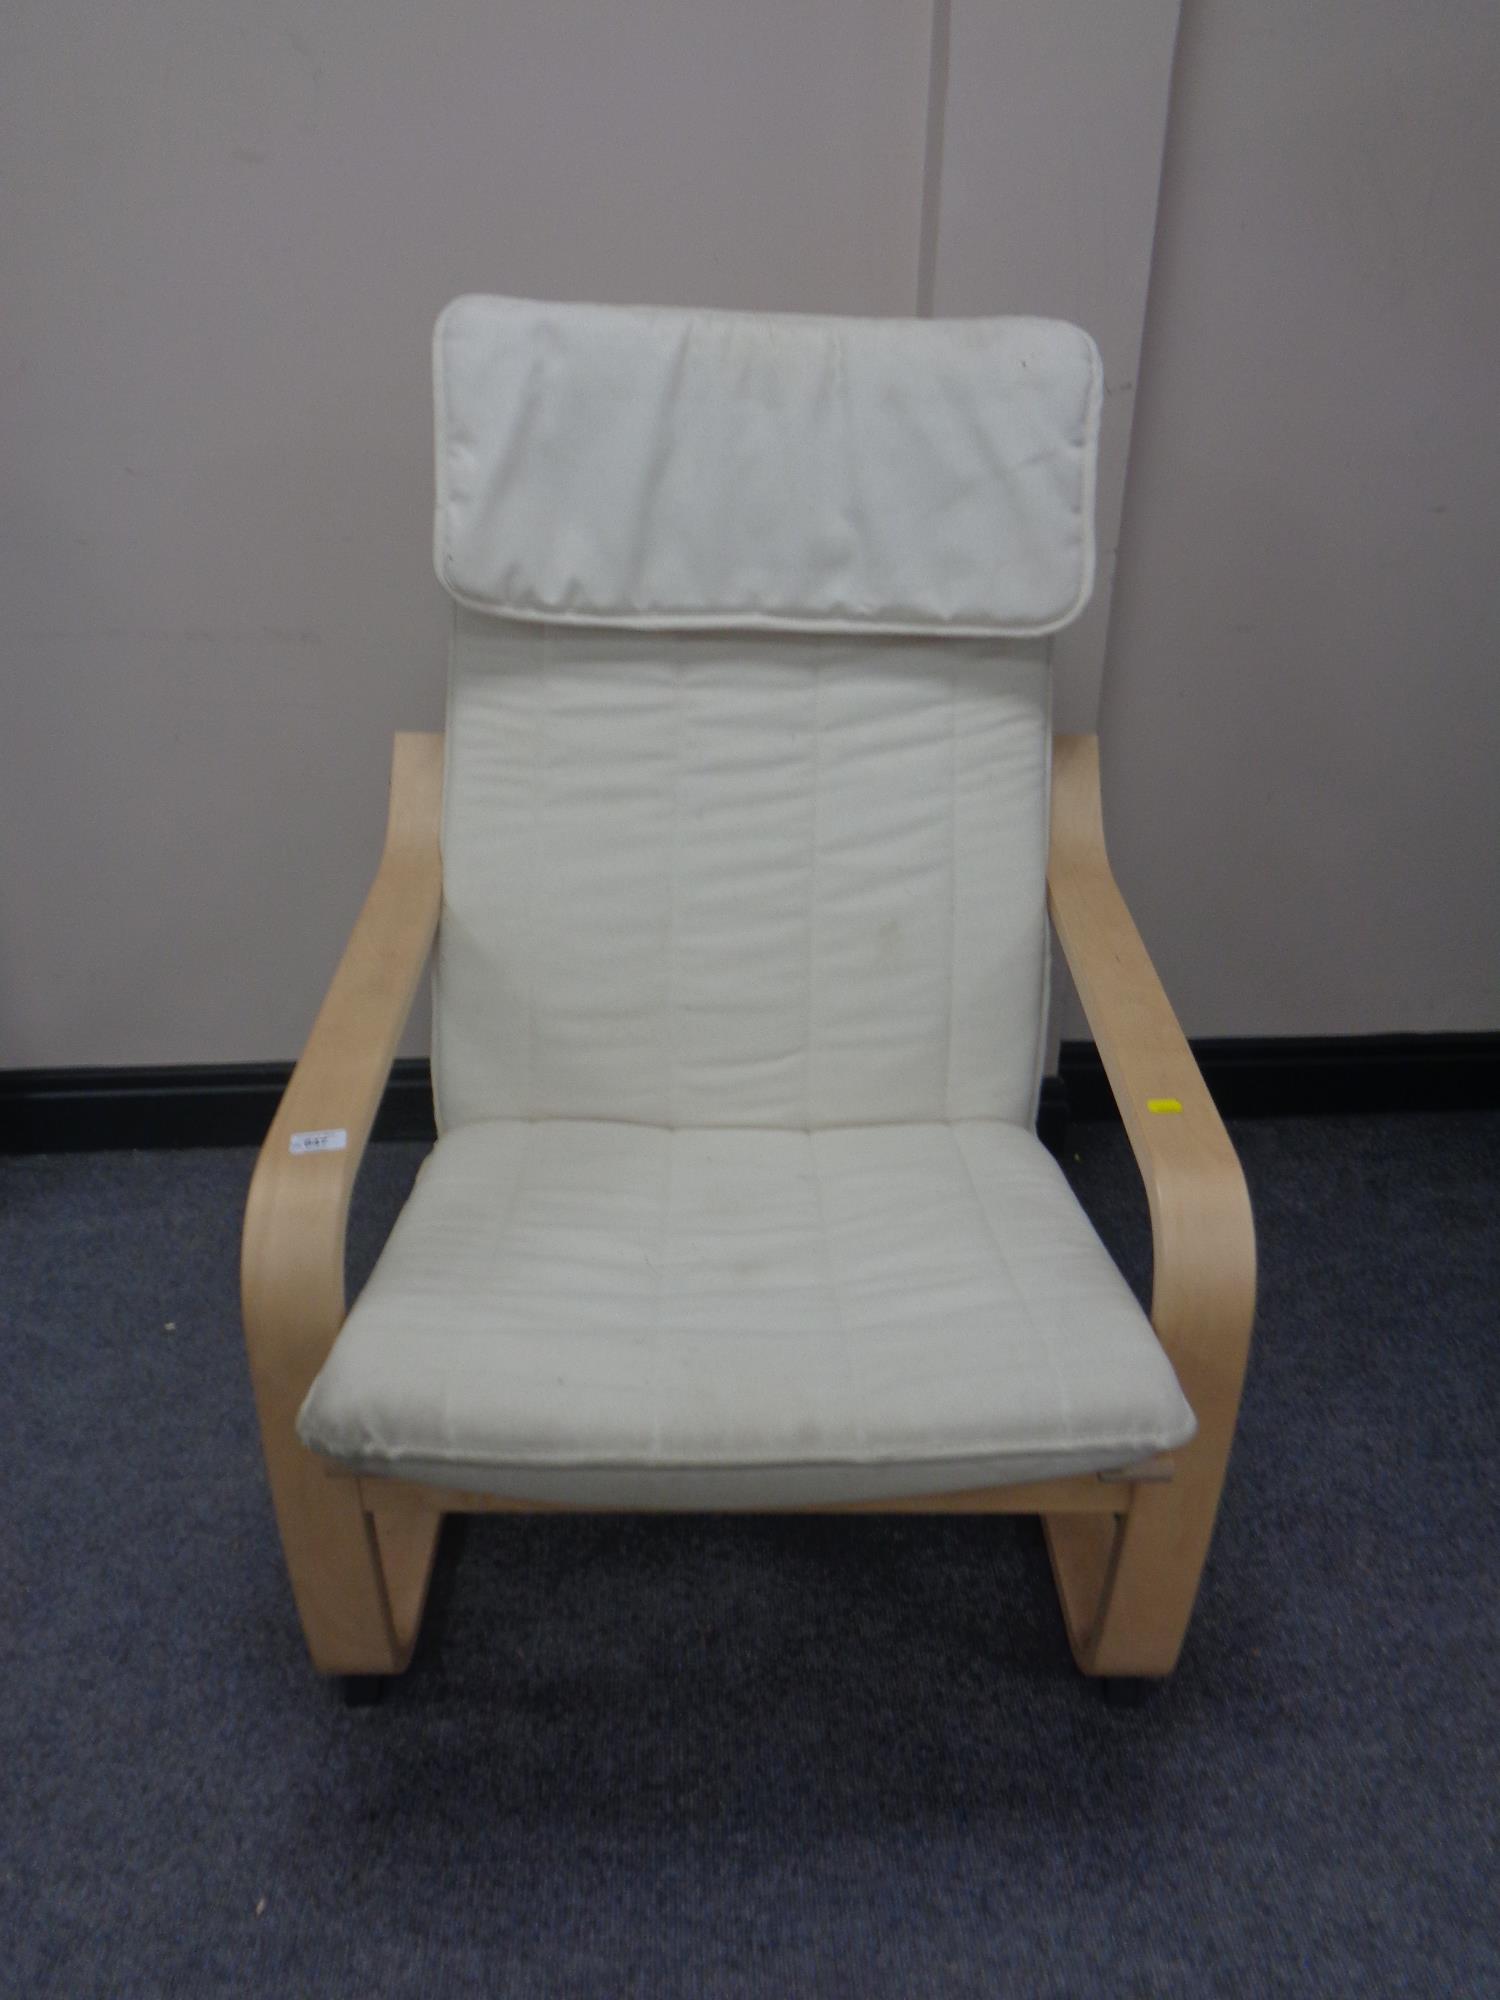 A beech framed Ikea relaxer chair